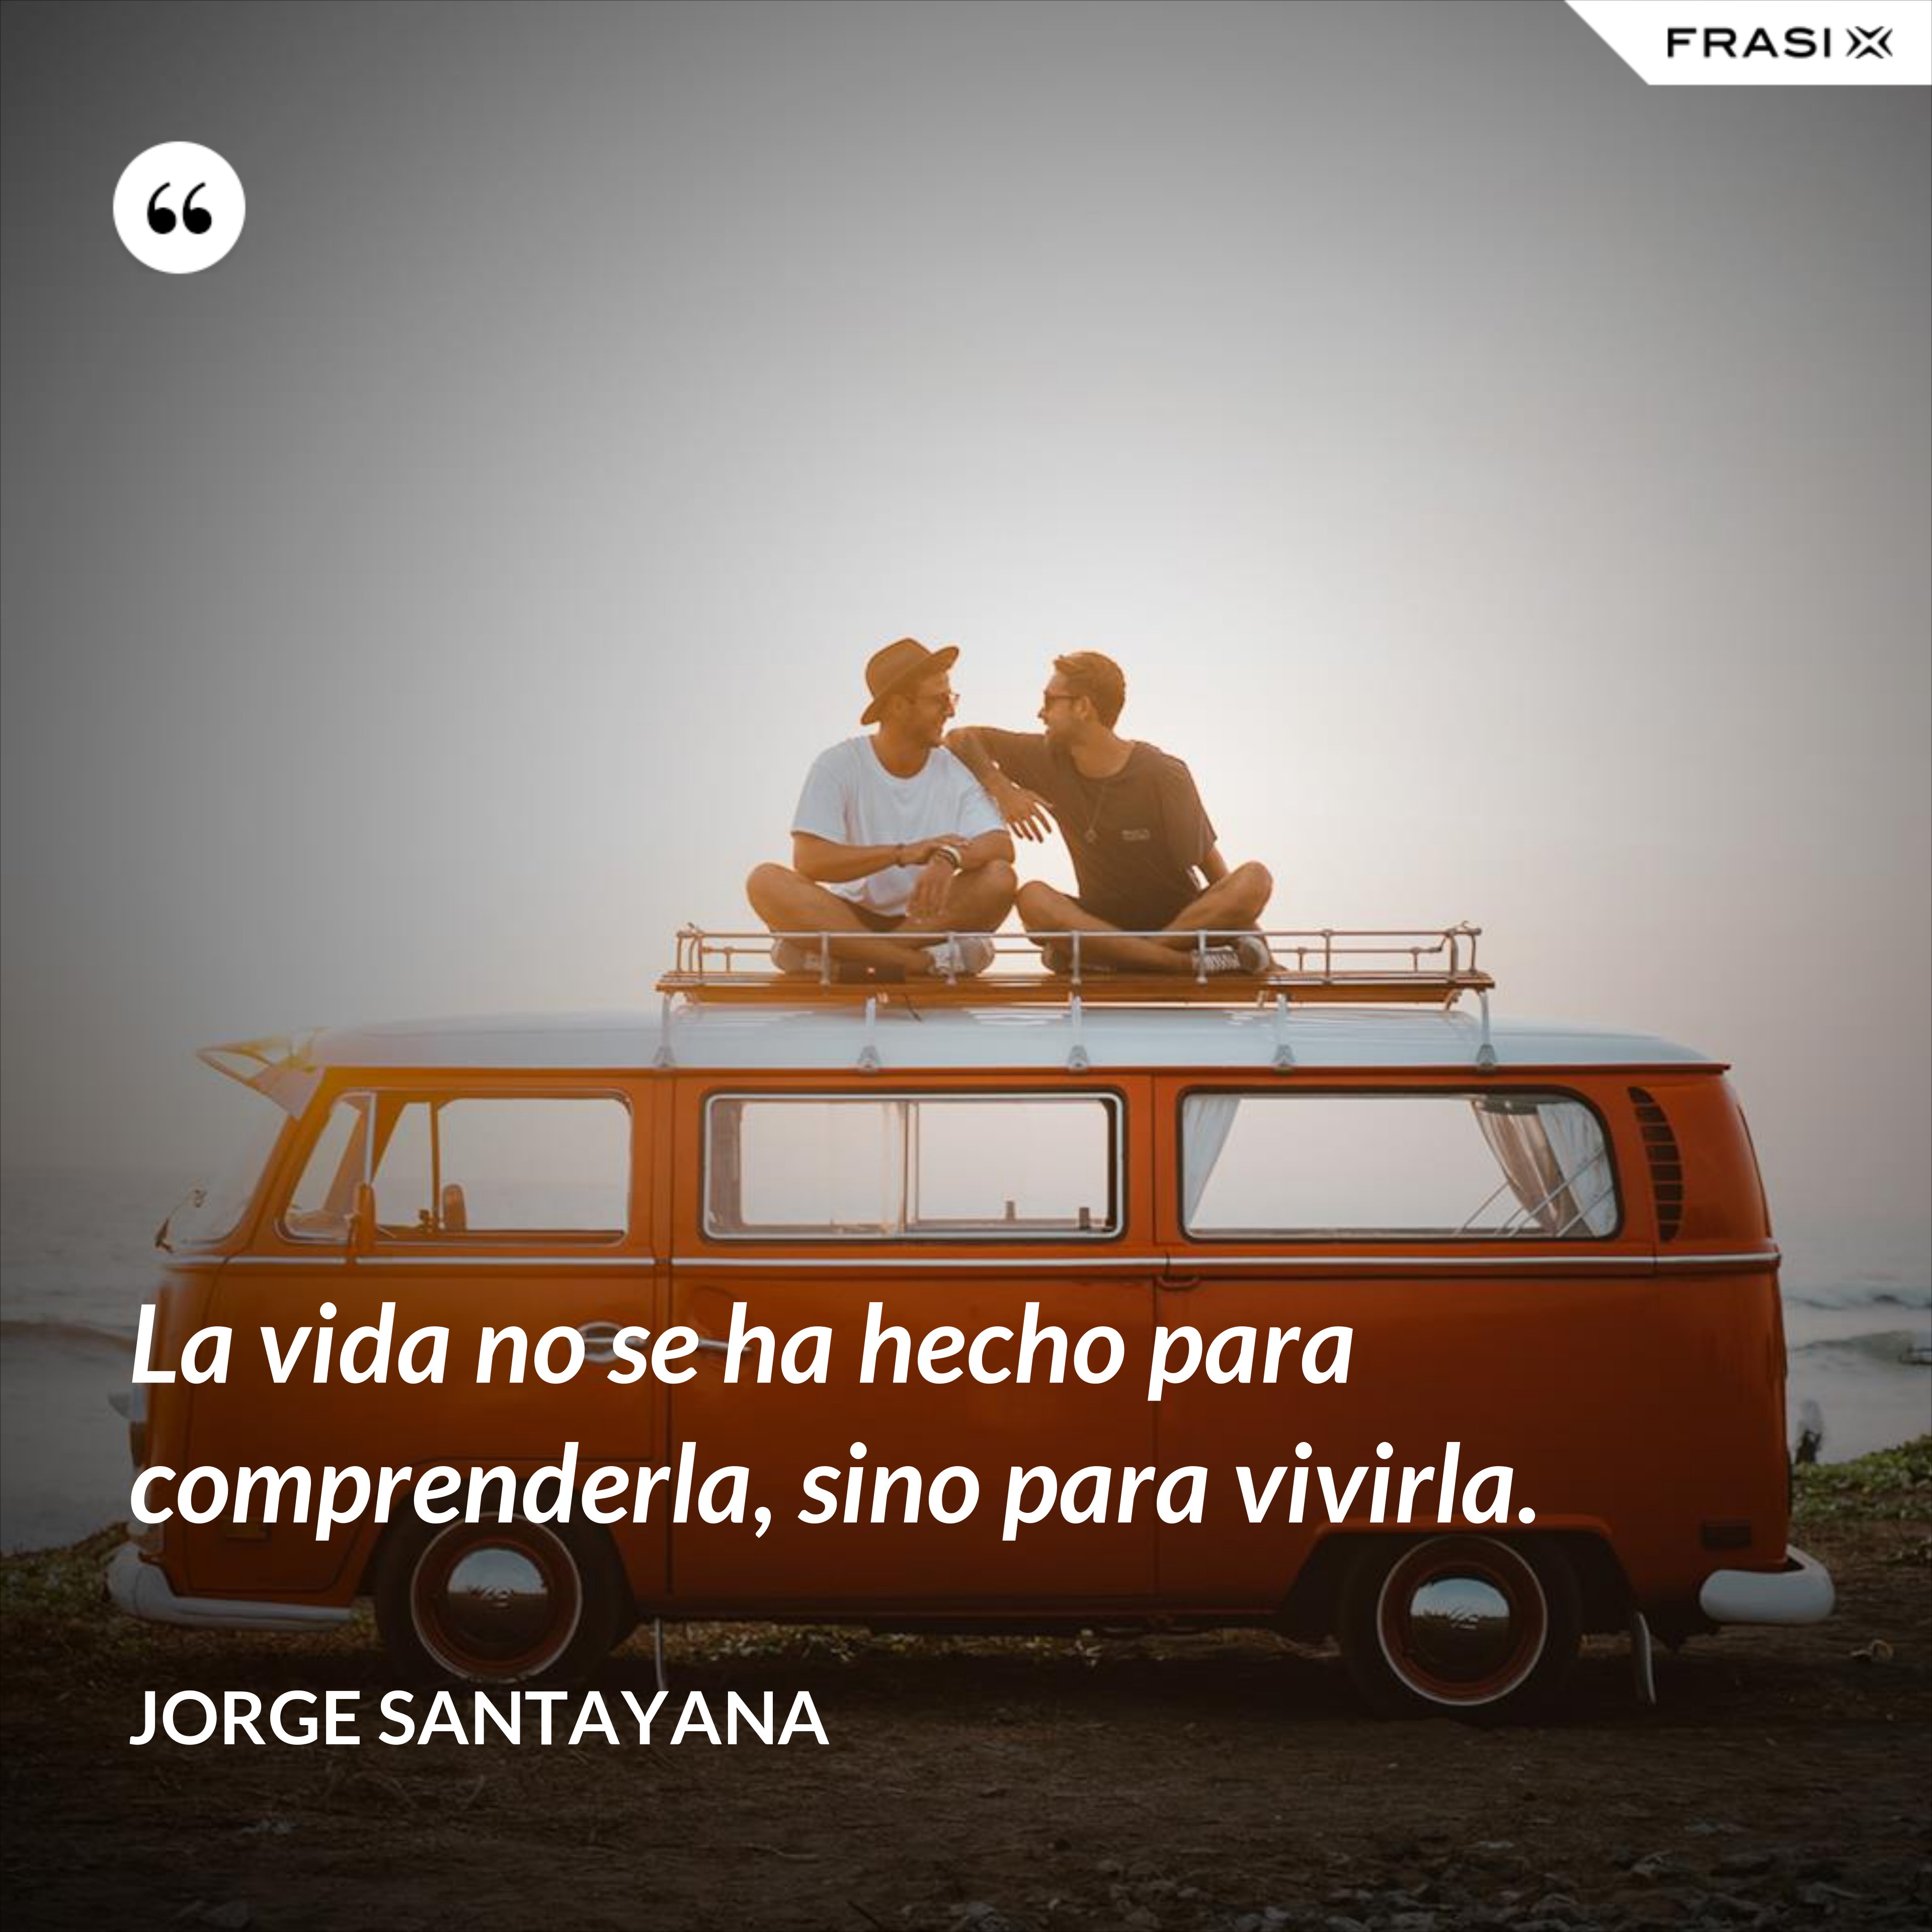 La vida no se ha hecho para comprenderla, sino para vivirla. - Jorge Santayana